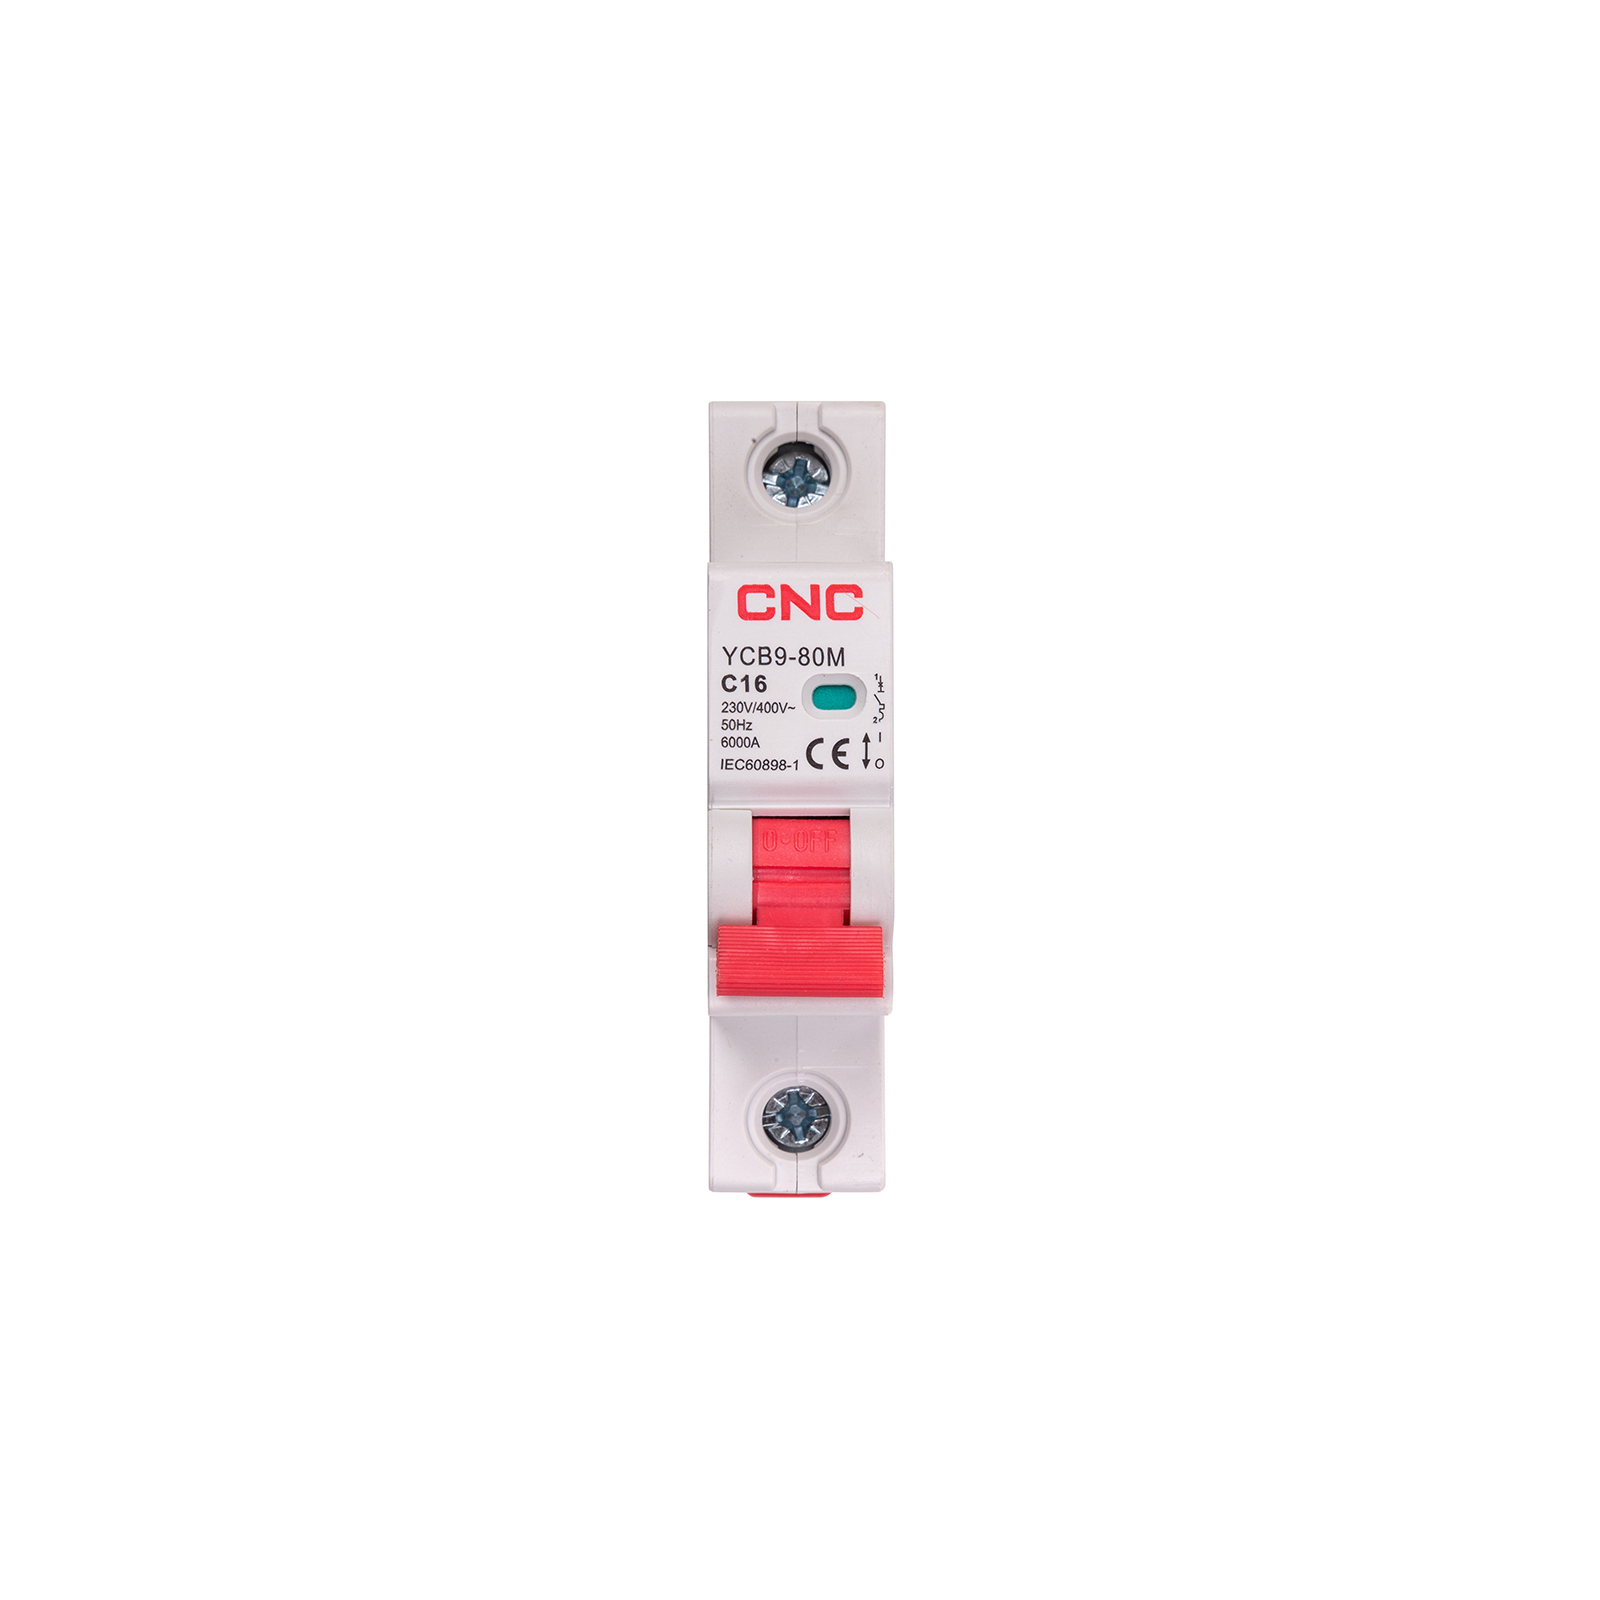 Автоматический выключатель CNC YCB9-80M 1P C16 6ka (NV821426)